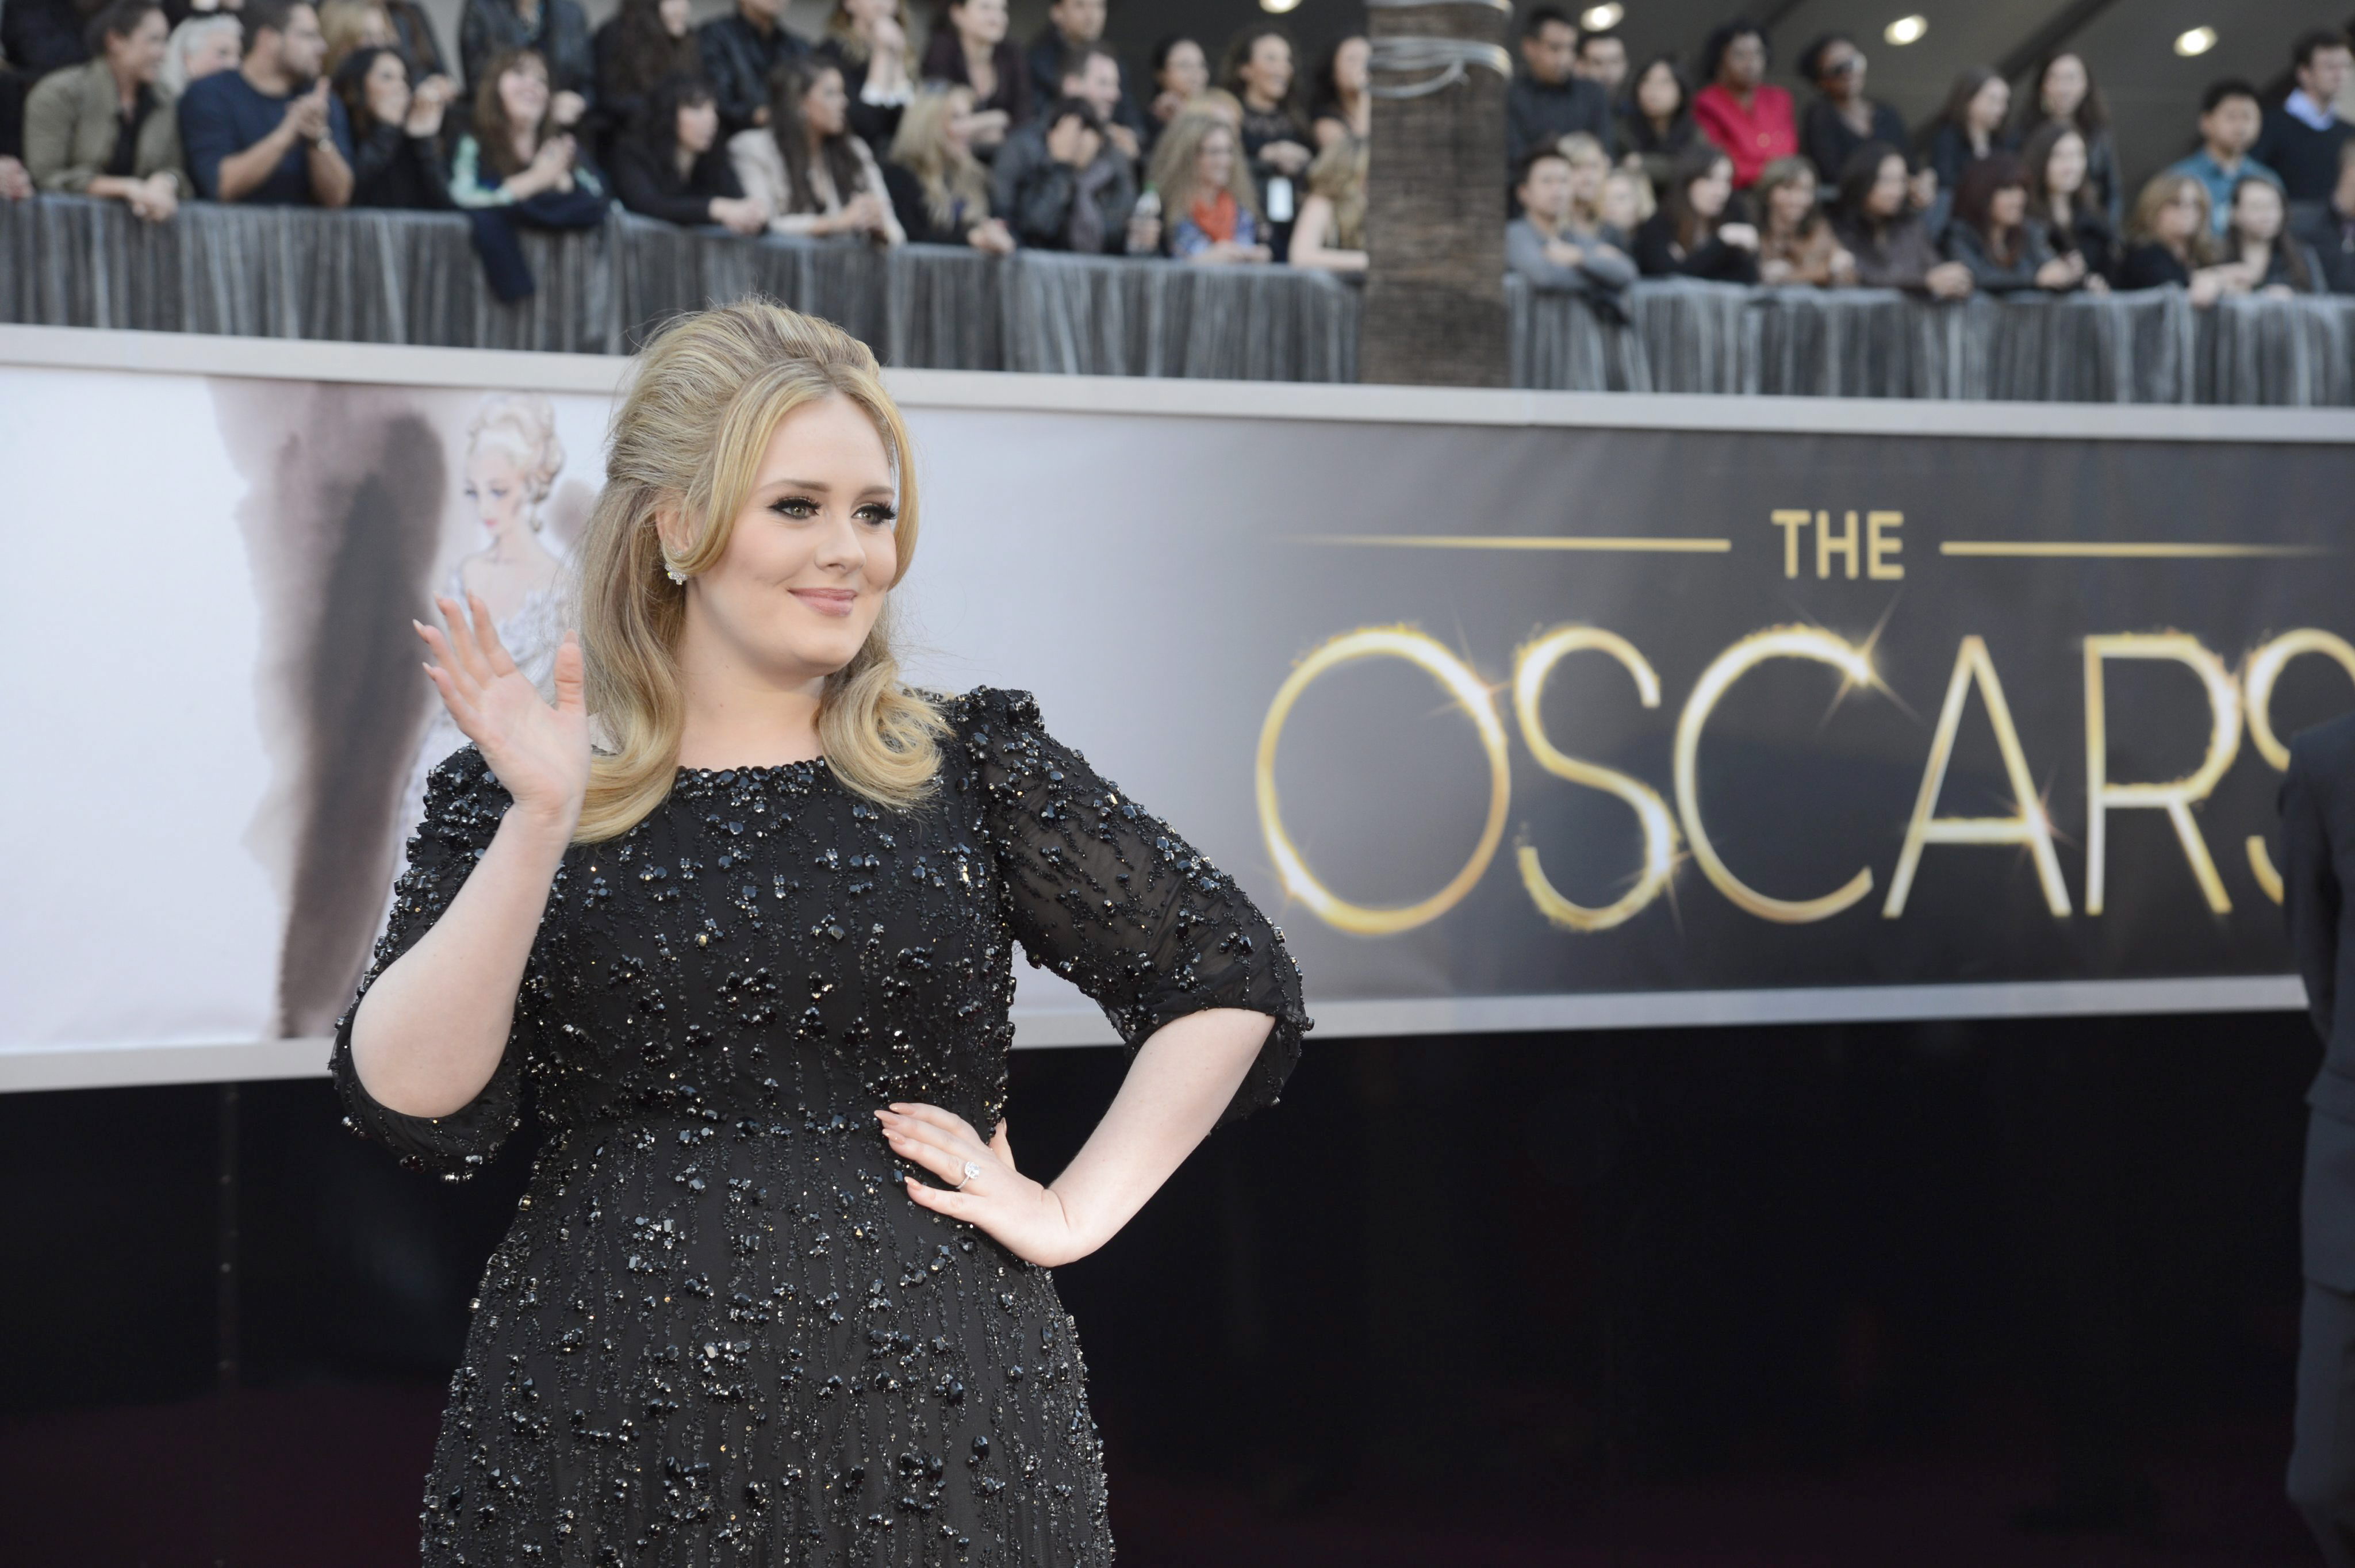 El tercer disco de Adele, el más esperado del año, saldrá pronto a la venta